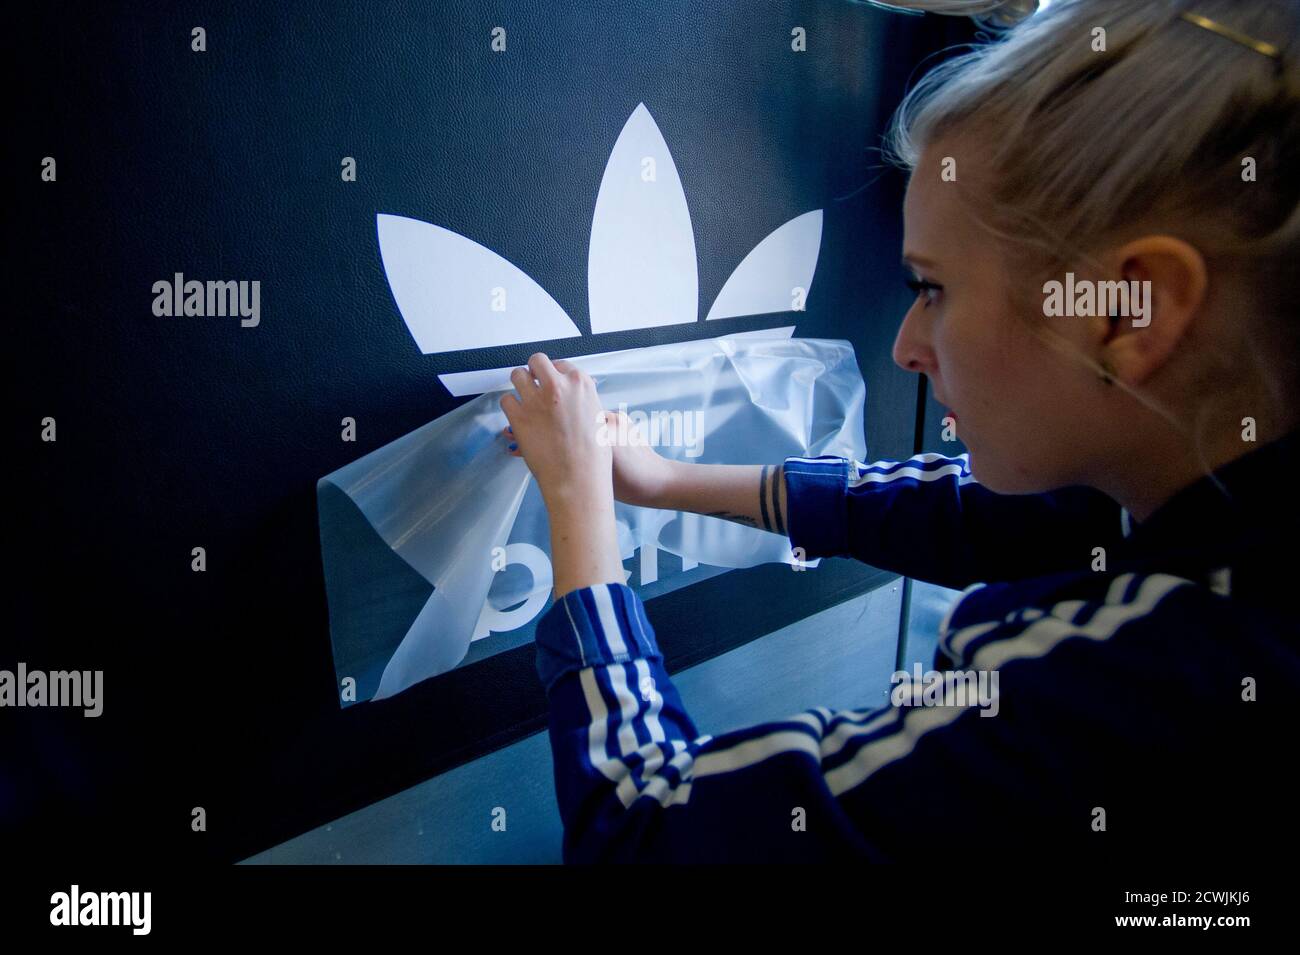 Suavemente Gimnasia Álgebra Un trabajador prepara un logo para la apertura de la nueva tienda de  originales Adidas en Berlín el 27 de marzo de 2014. Adidas ha lanzado un  nuevo modelo de tienda para